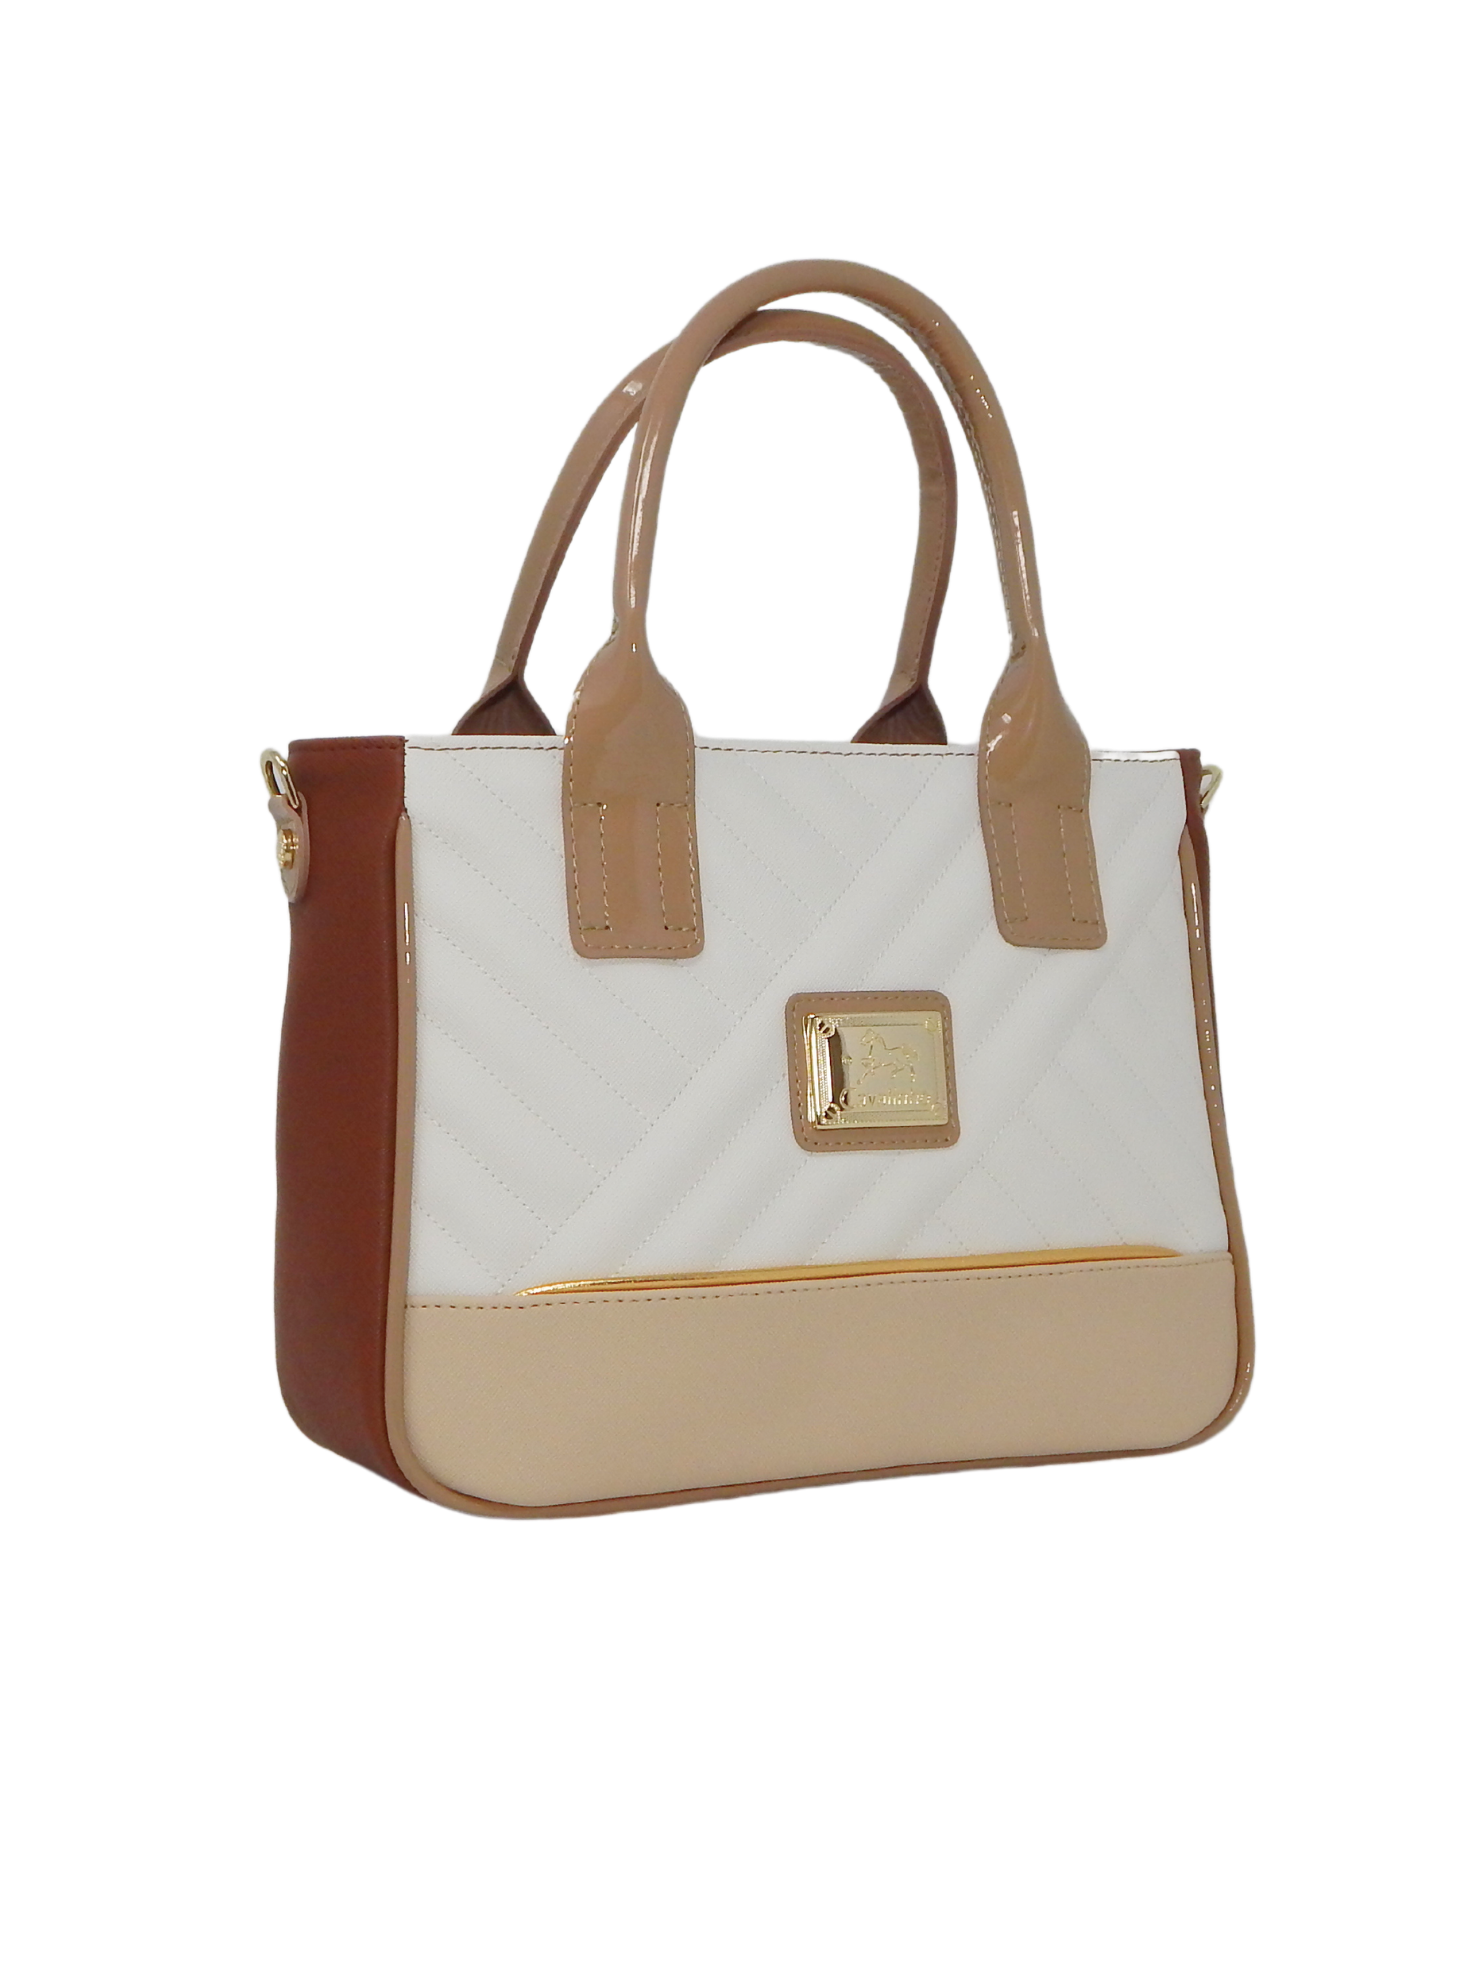 Cavalinho Ciao Bella Handbag SKU 18060507.31 #color_beige / white